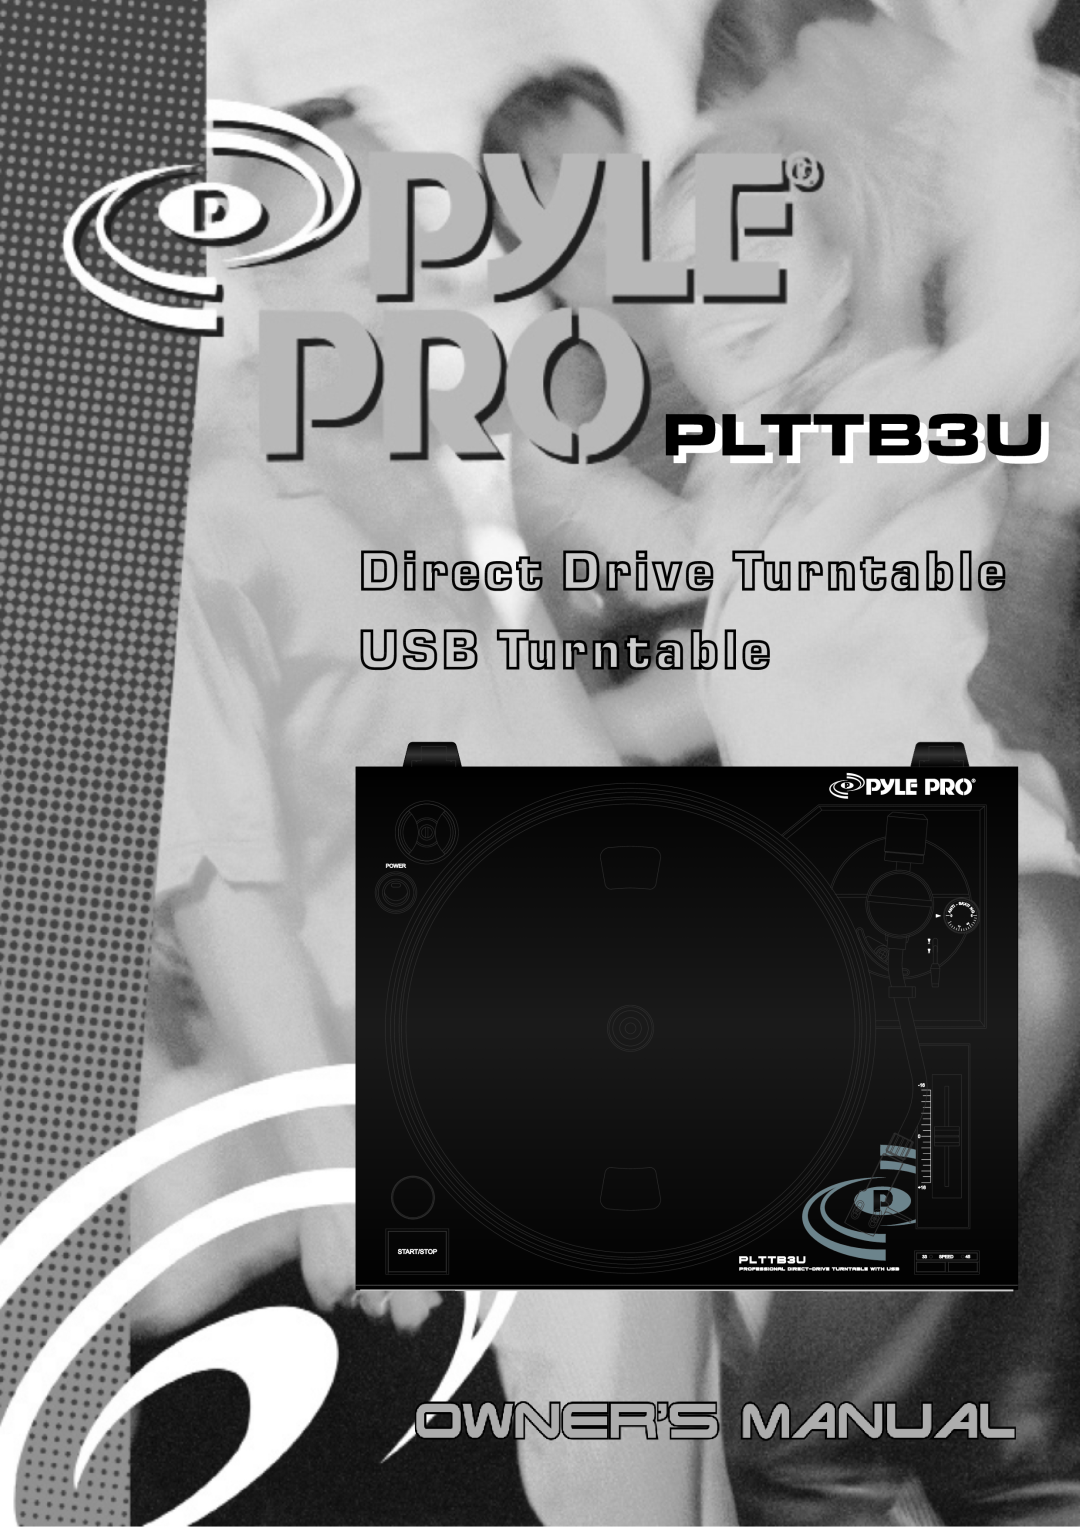 PYLE Audio PLTTB3U manual Direct Drive Turntable USB Turntable 